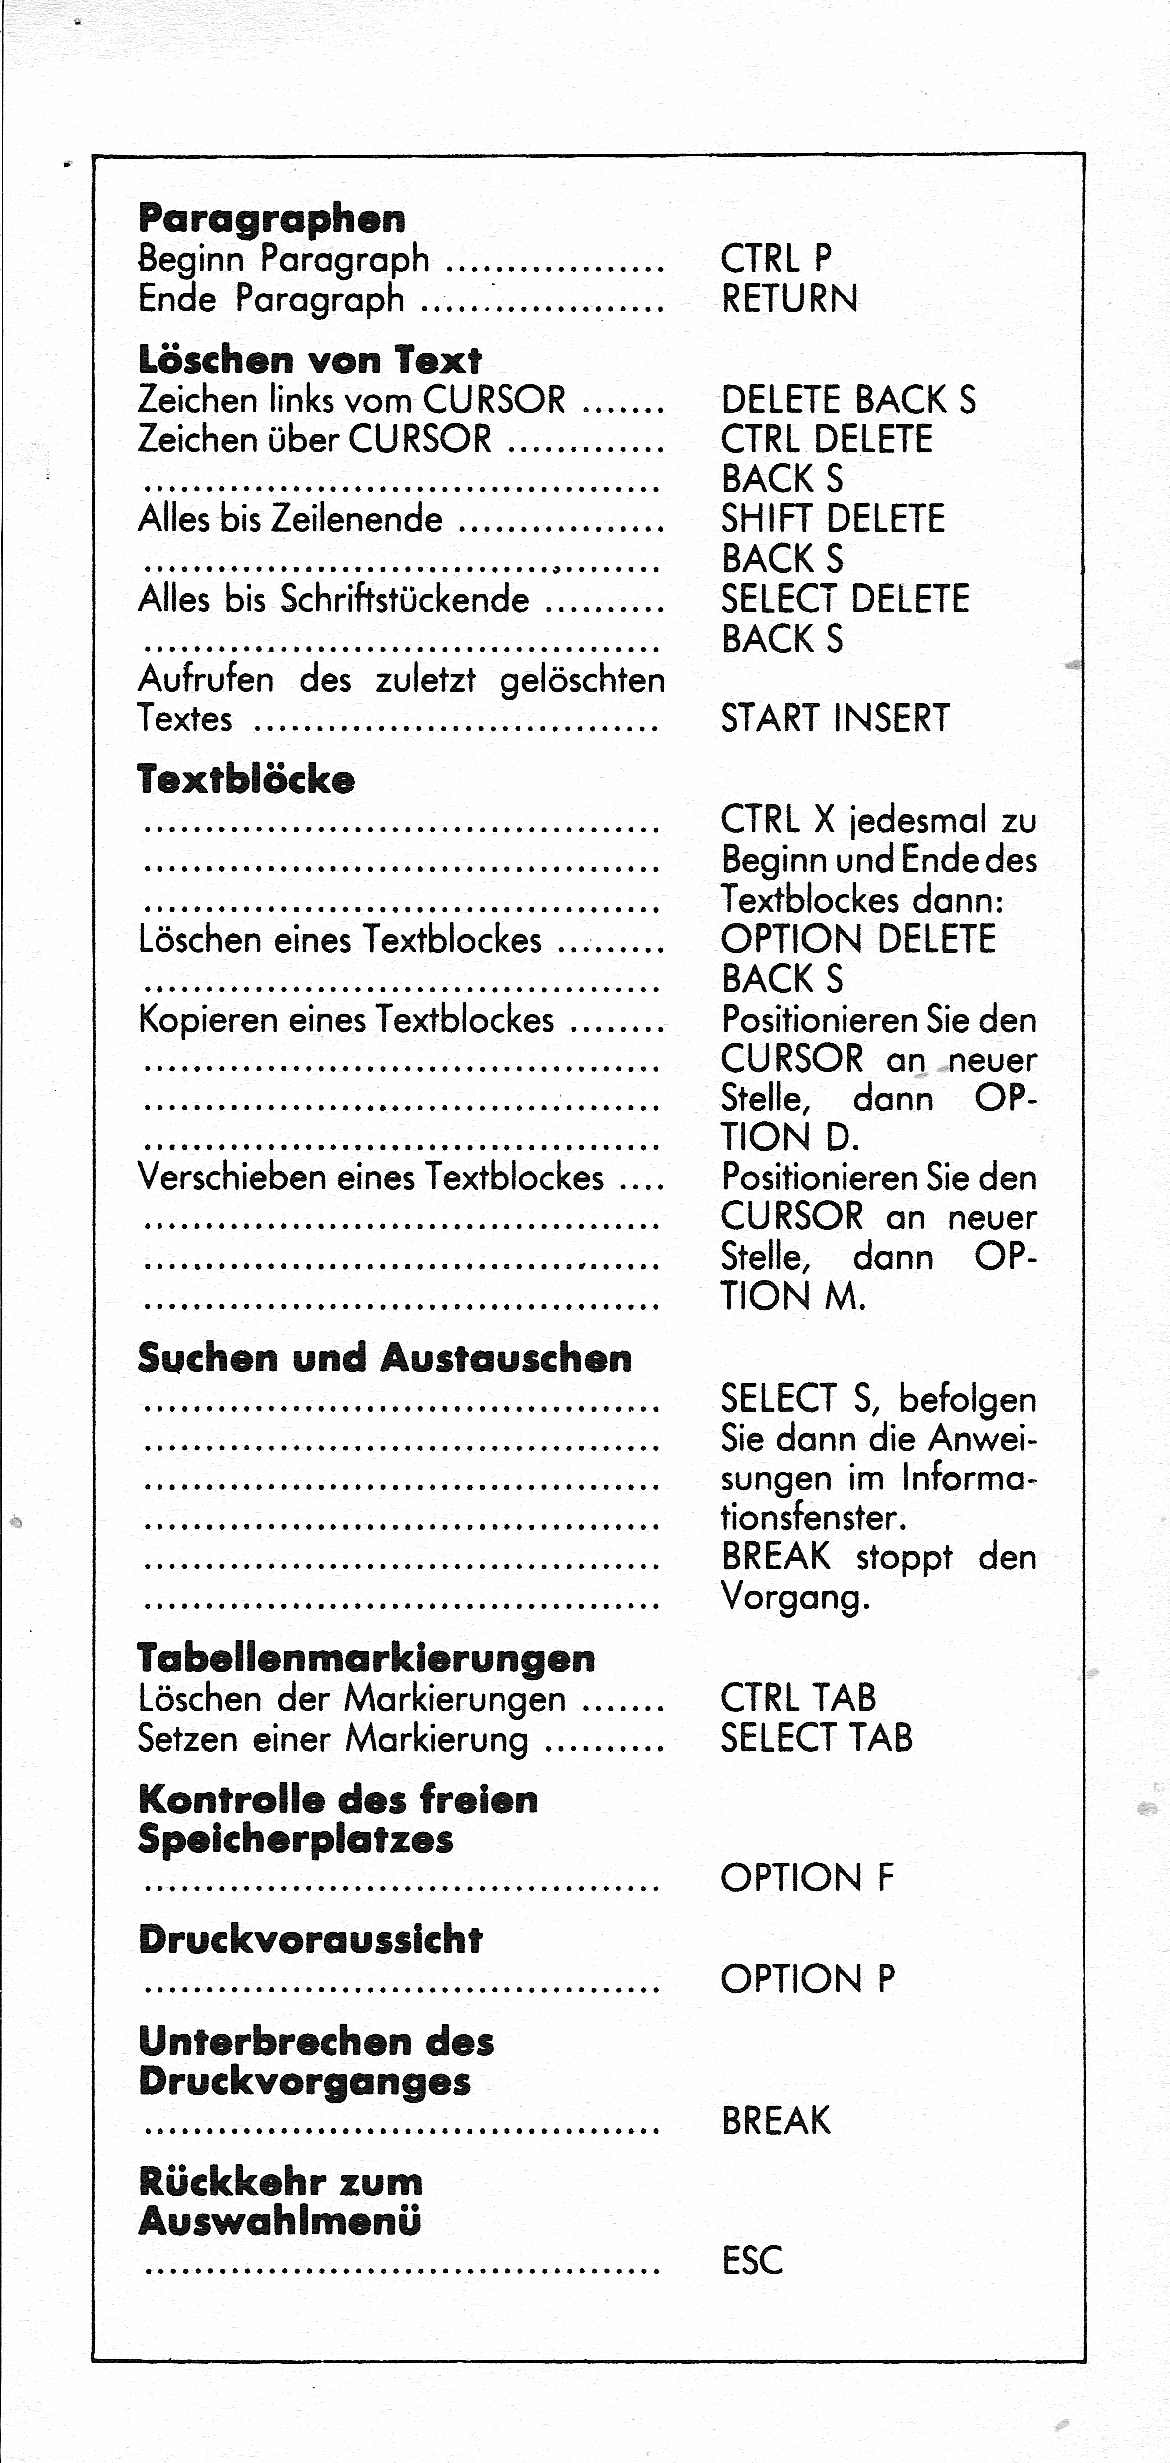 Atari Schreiber/Referenz-Karten_003.png